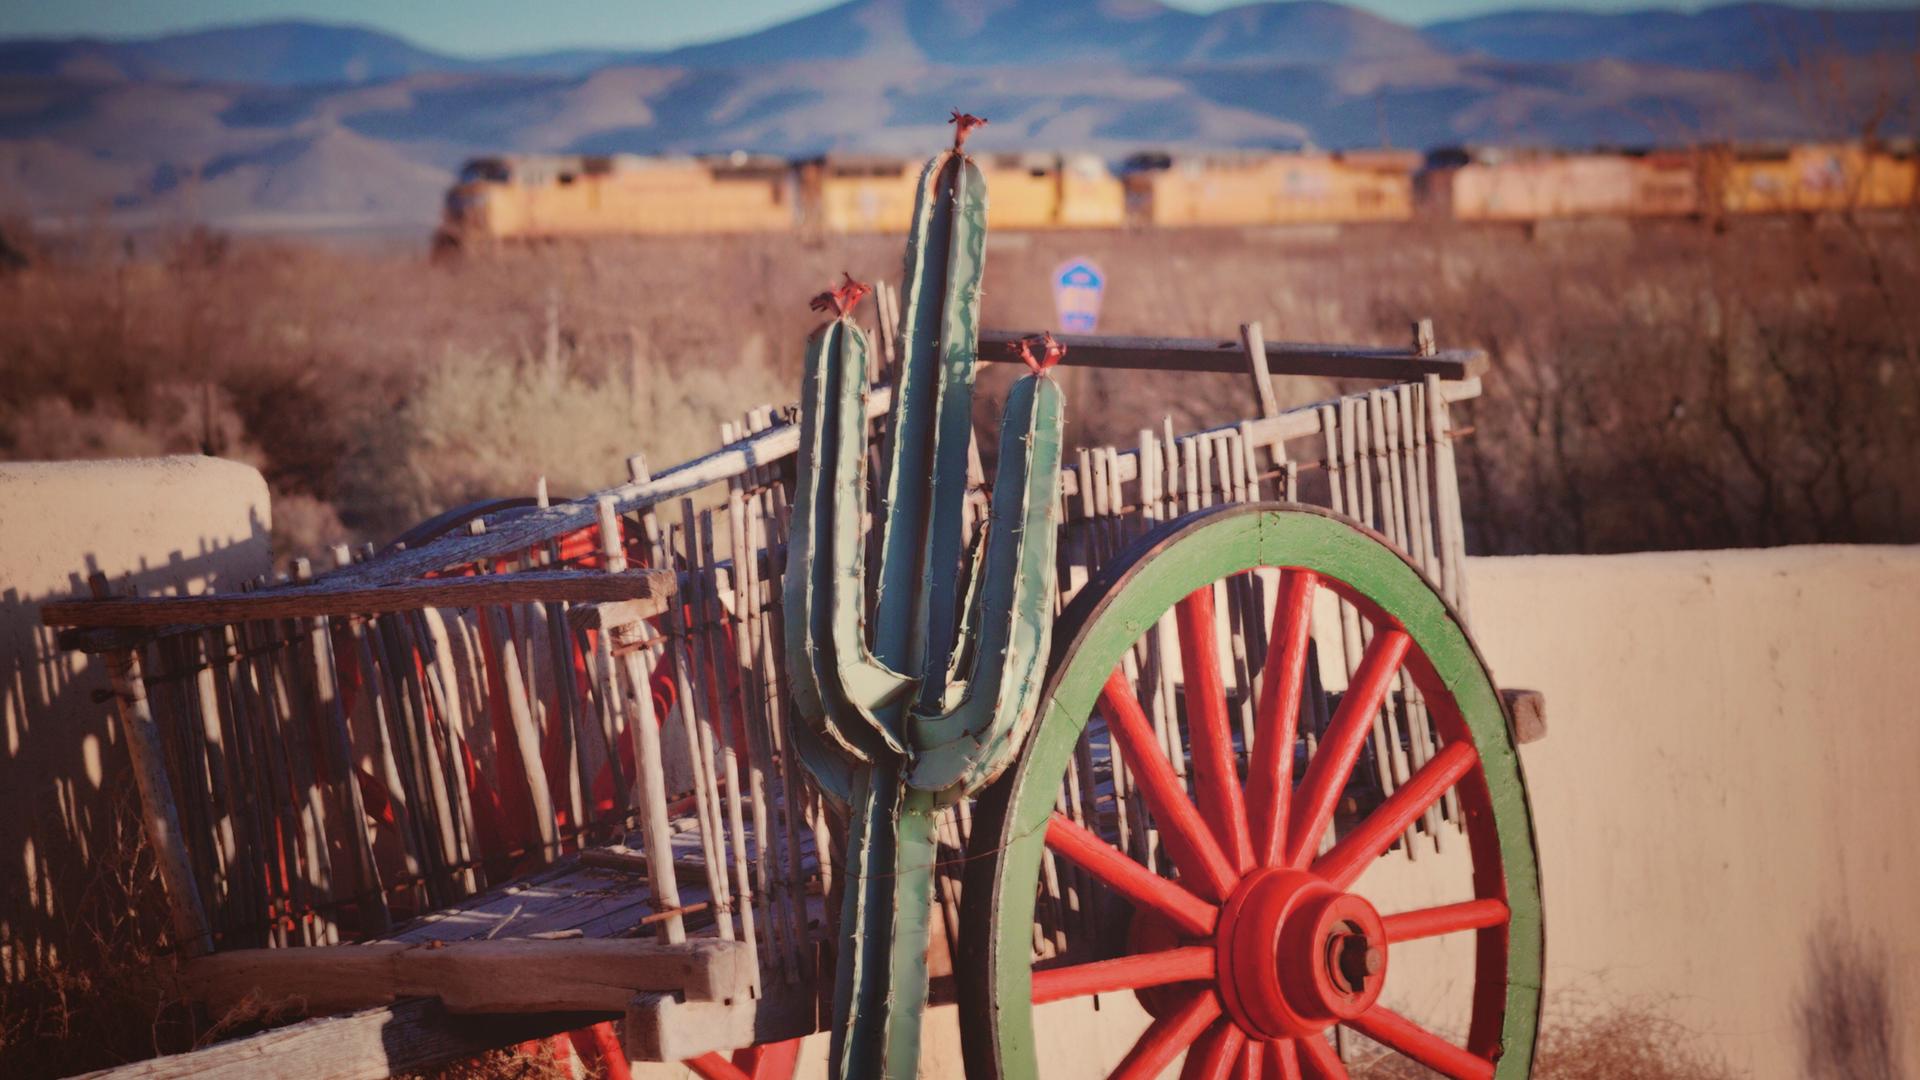 Ein Kaktus vor einem Handkarren aus Holz vor einer Wild-West-Kulisse.